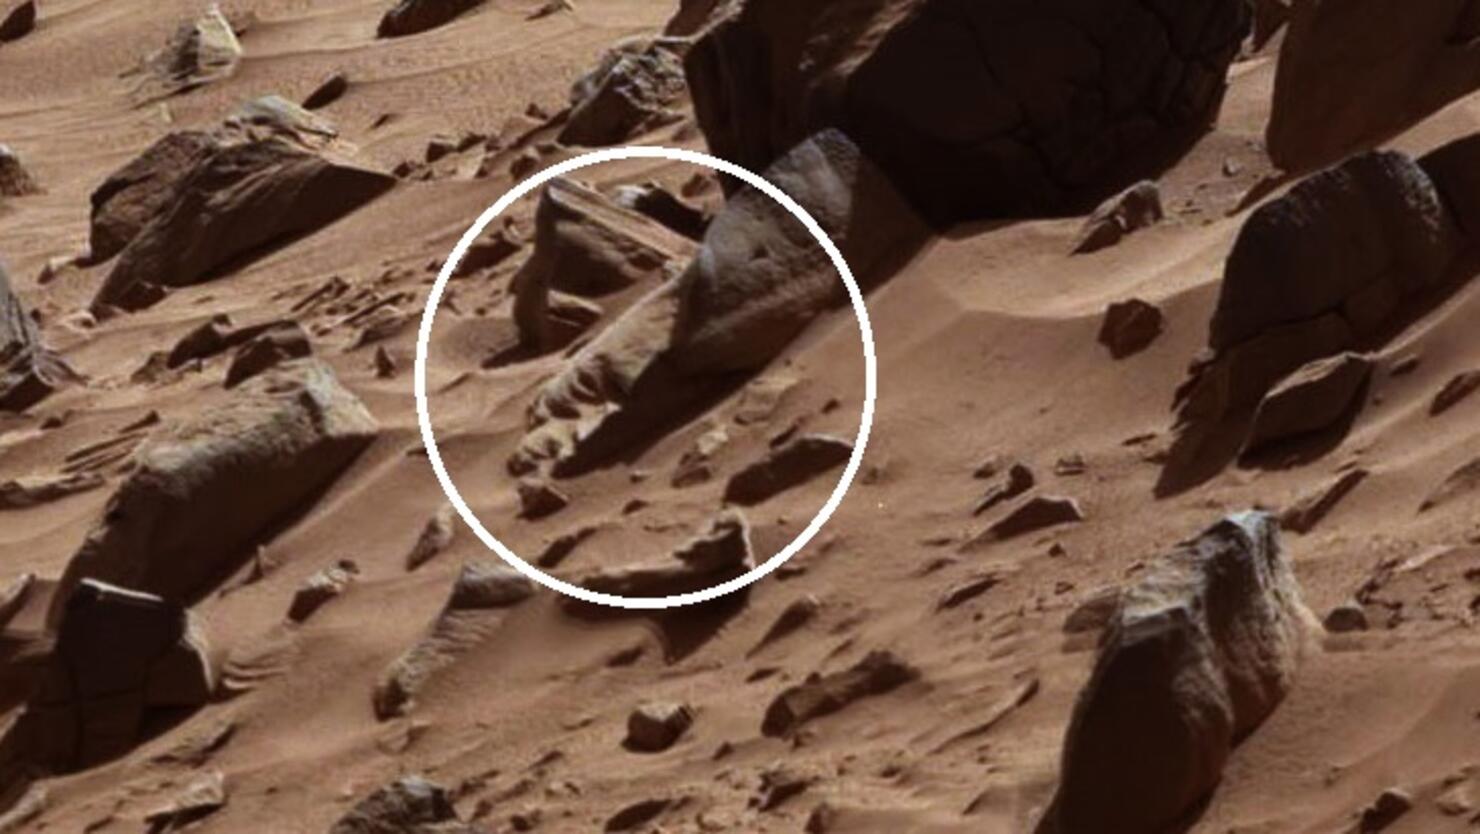 фрагмент цефалона на марсе варфрейм фото 82